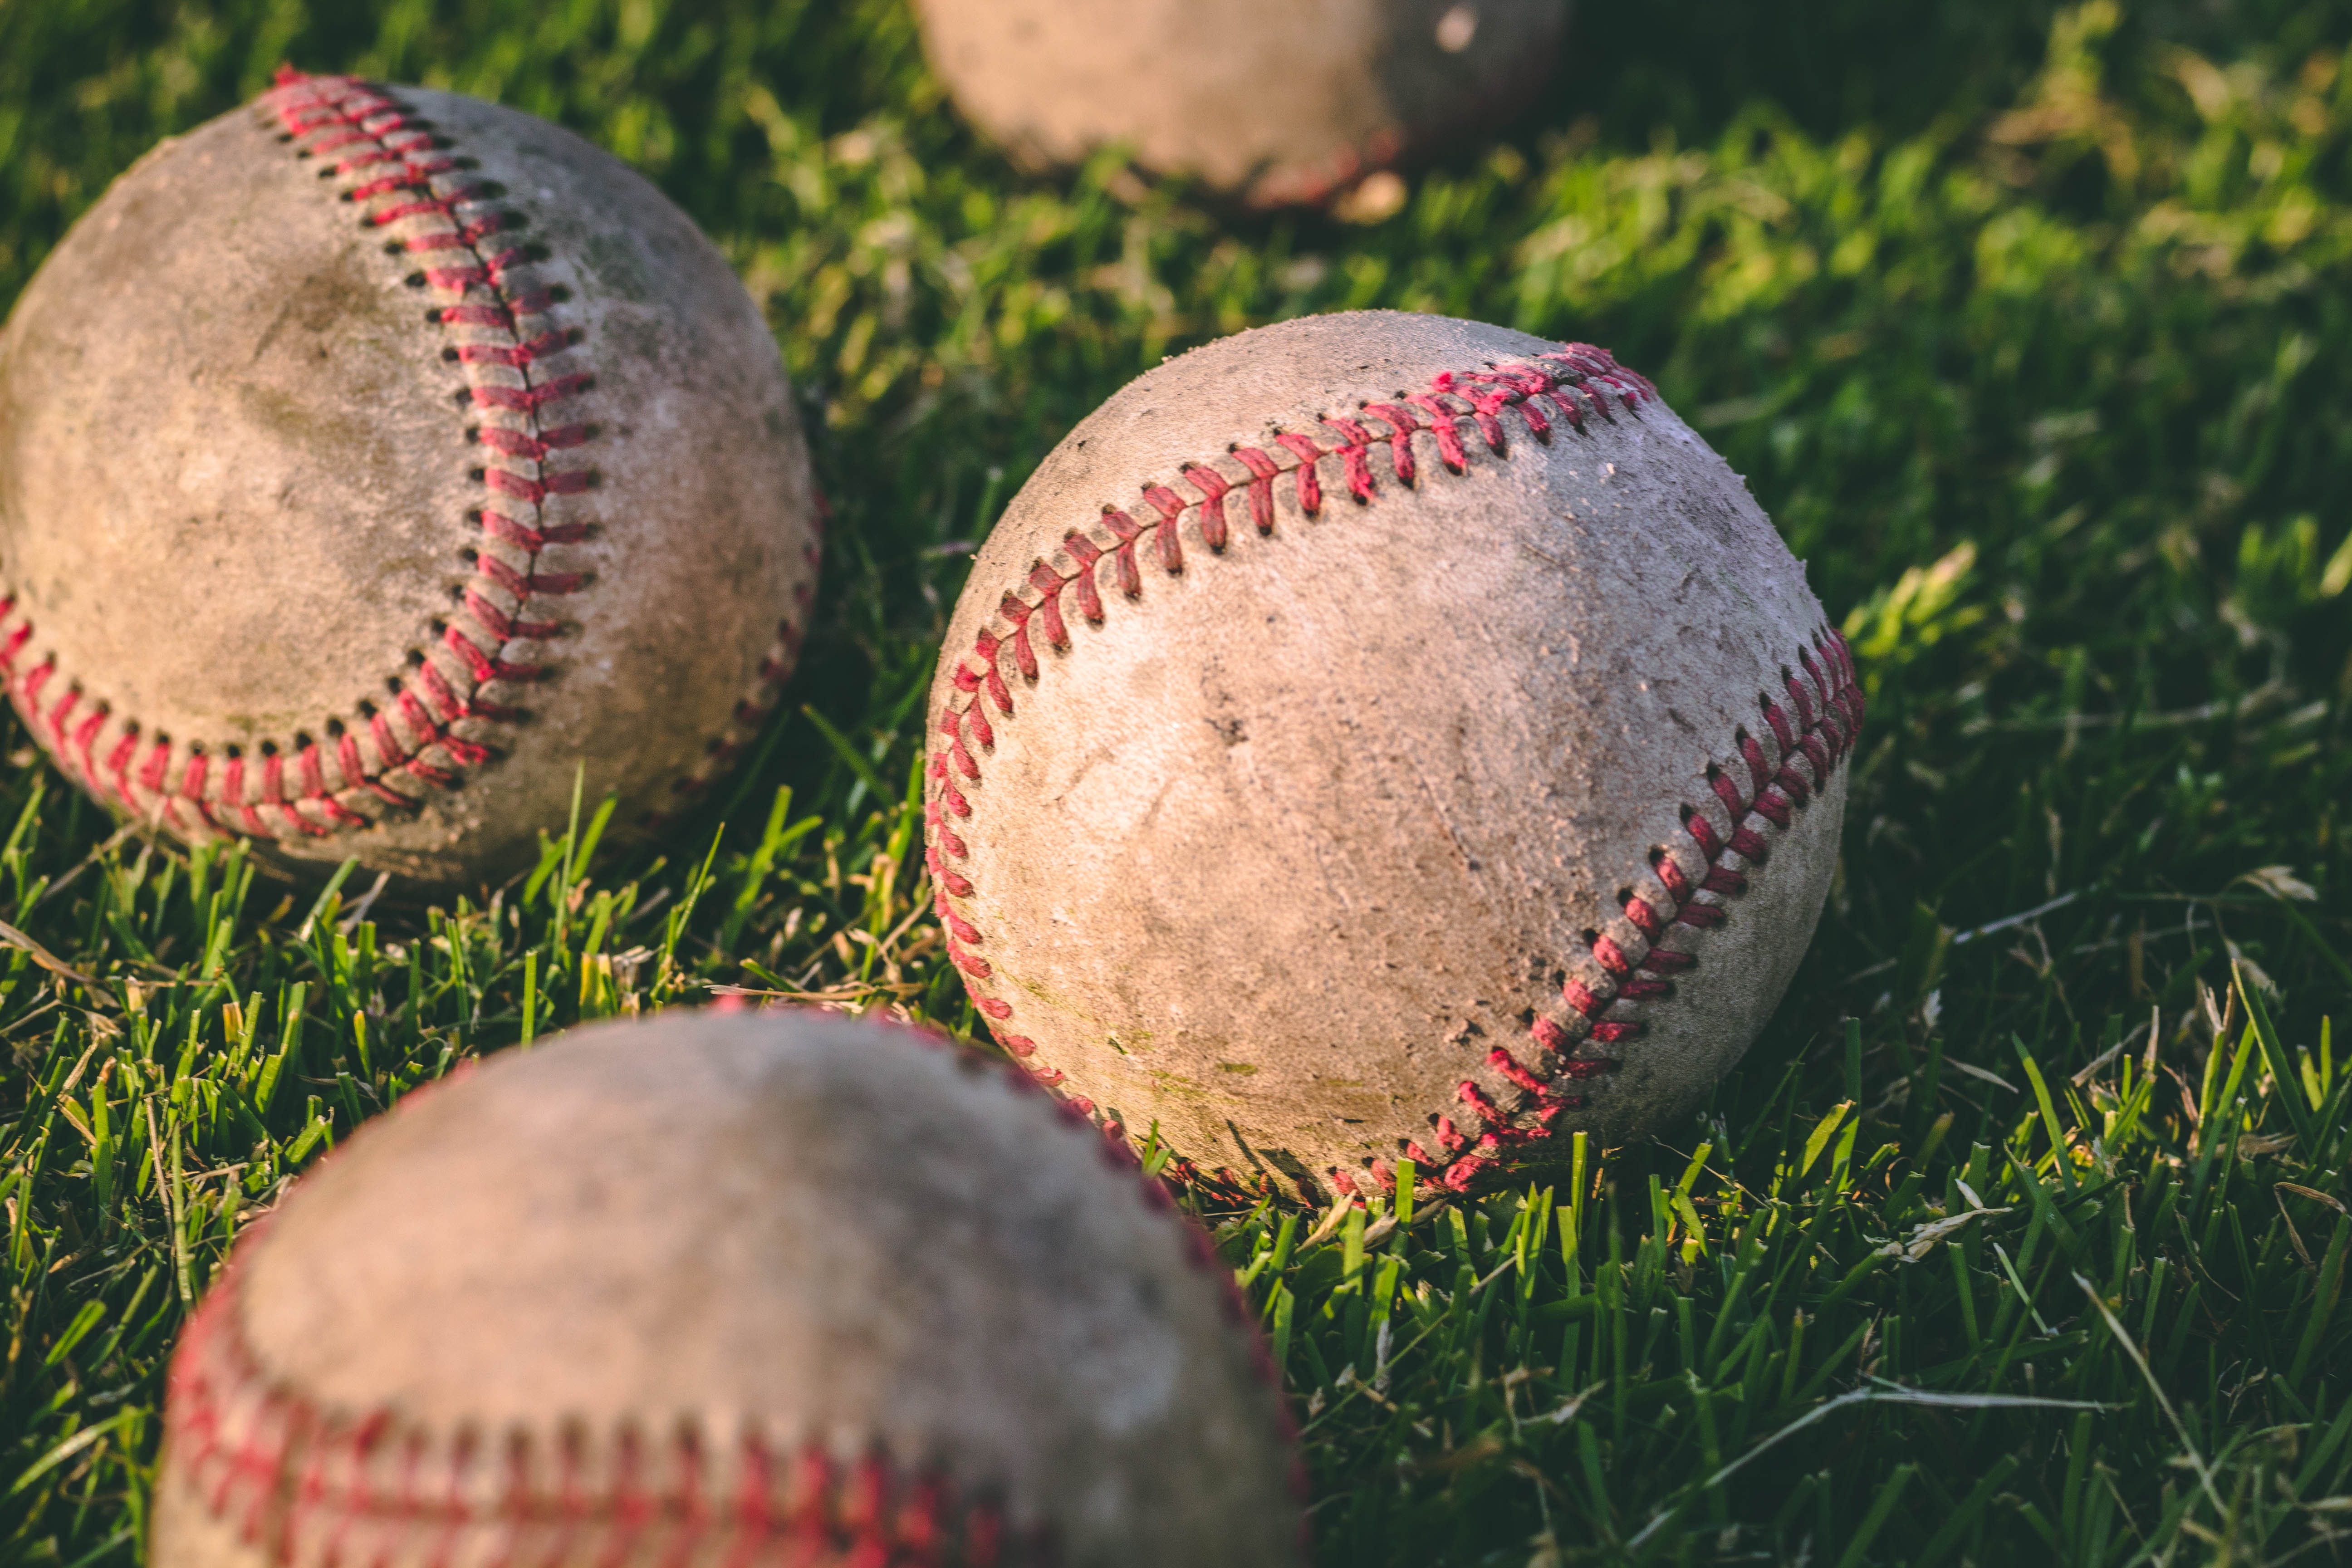 Three baseballs in a field.